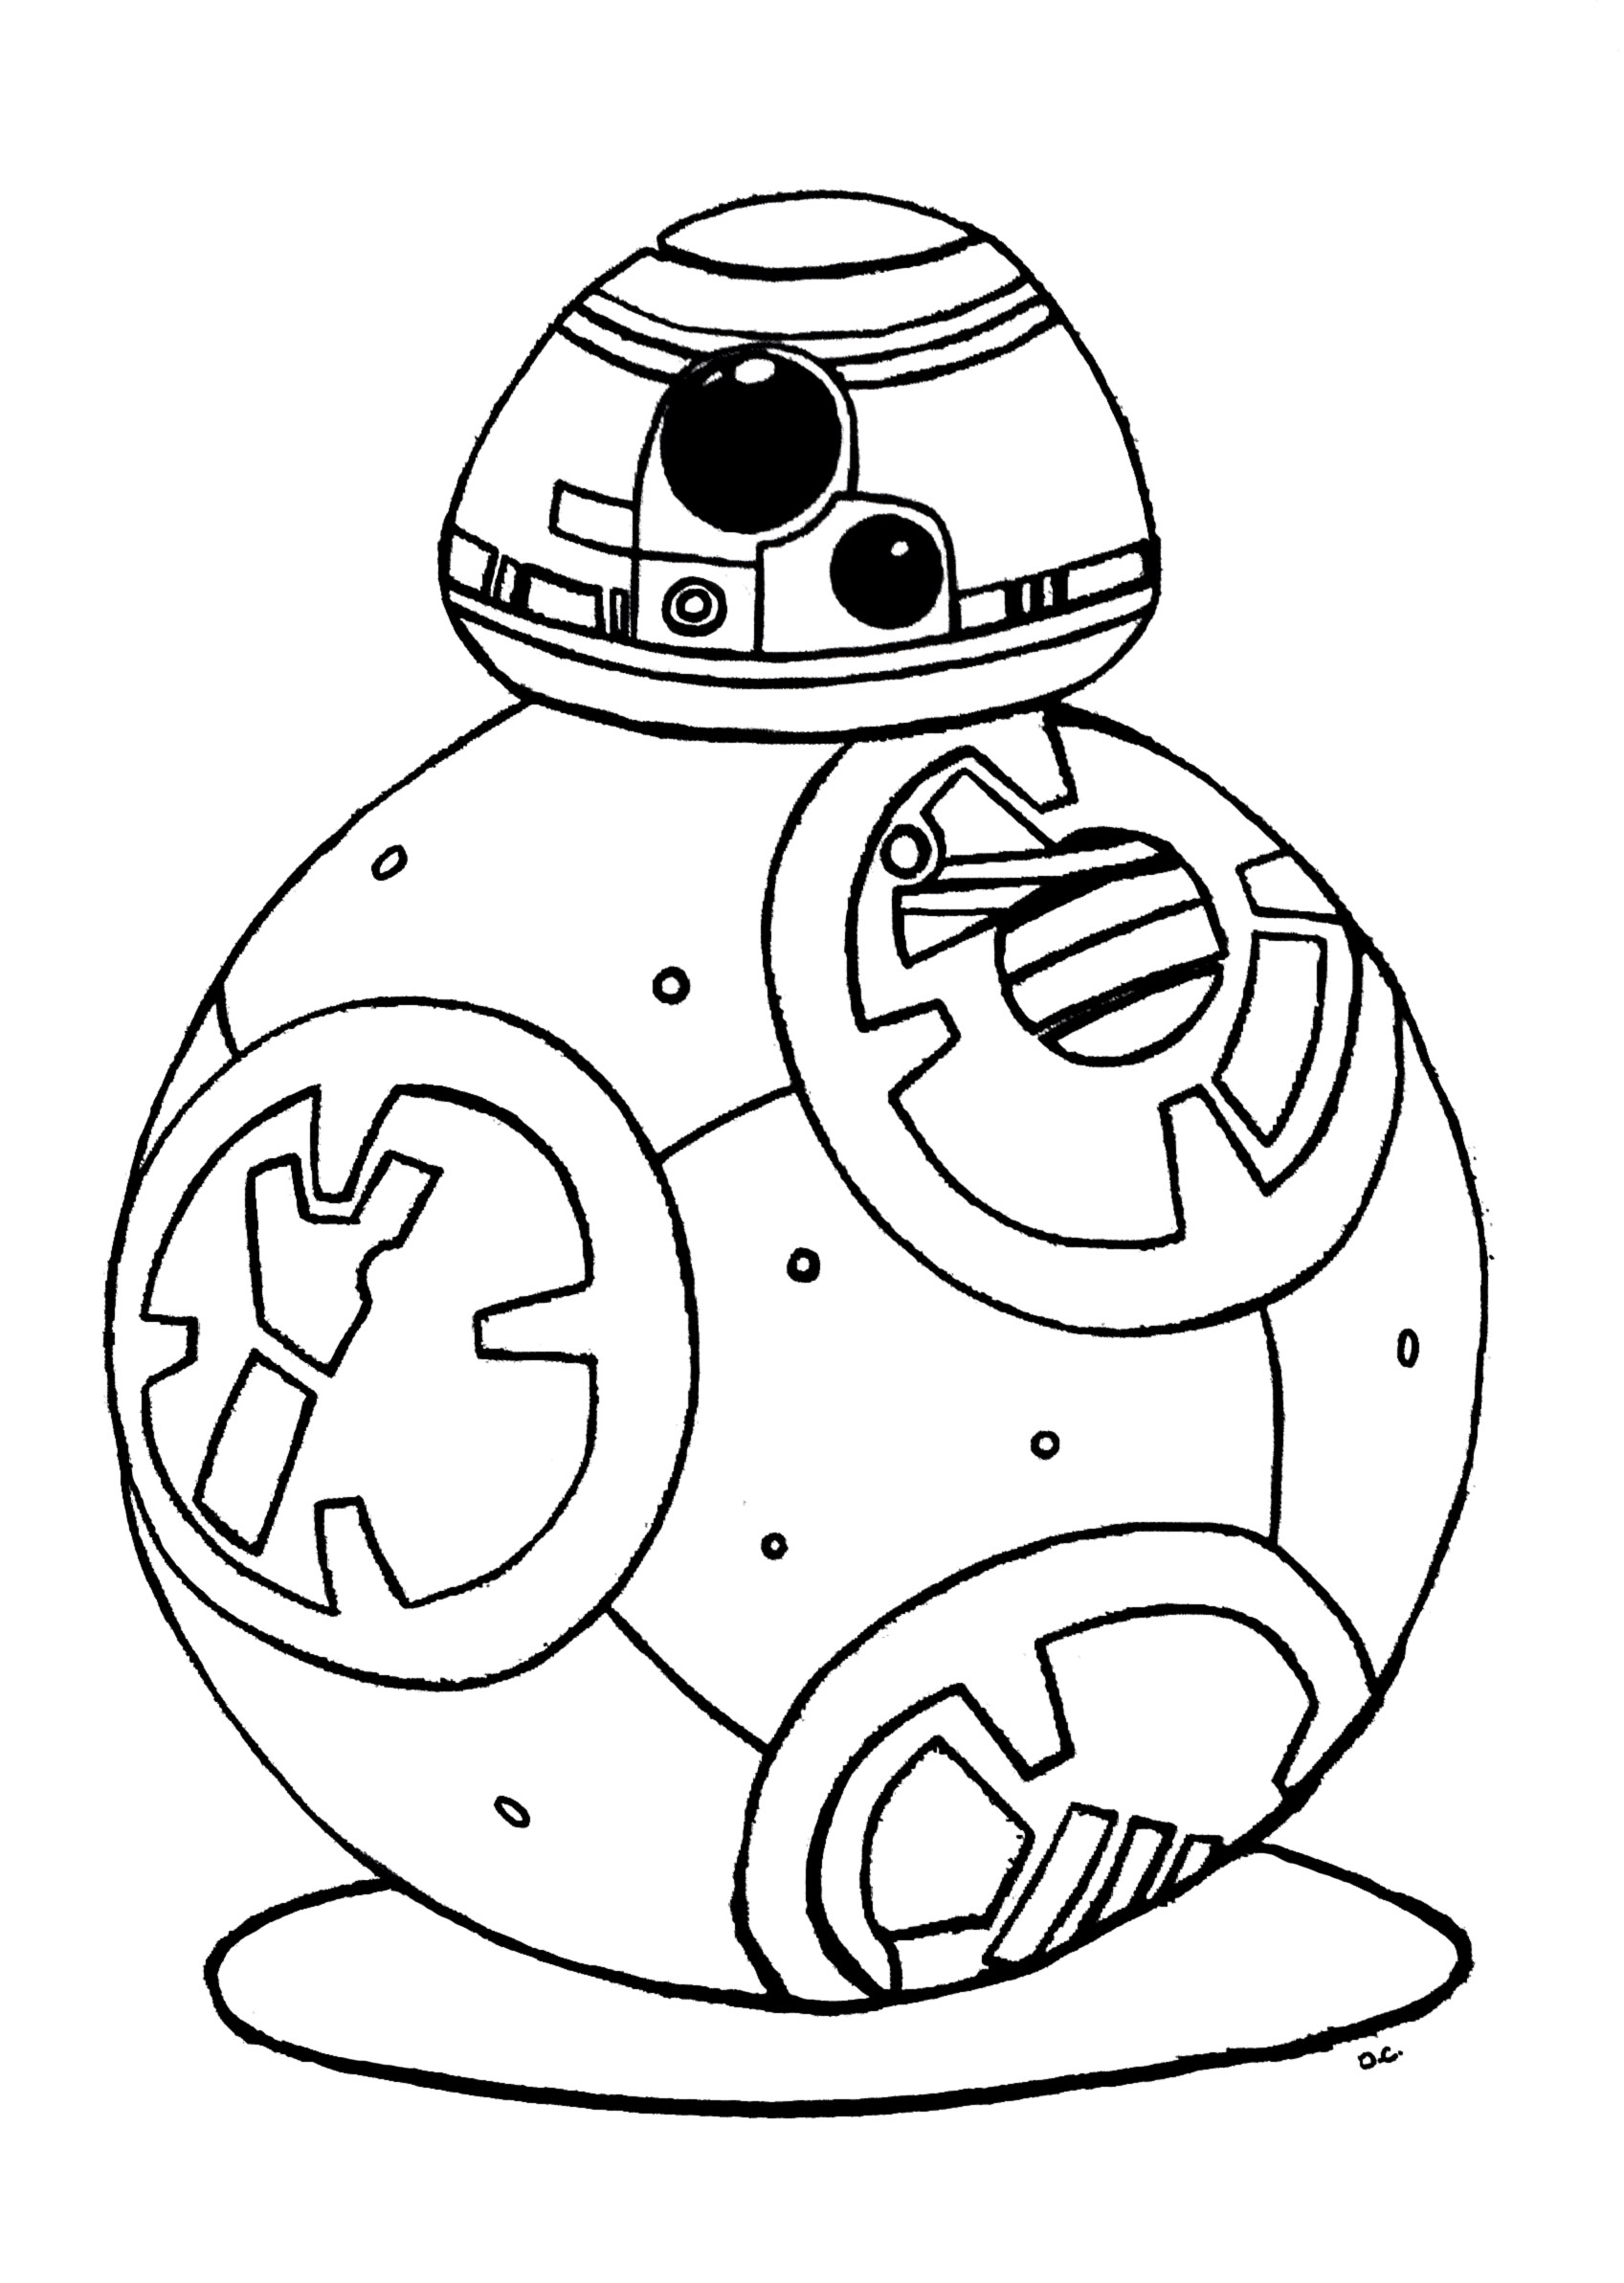 Desenho para colorir inspirado no robot droide BB-8 de Star Wars 7 (O Despertar da Força)